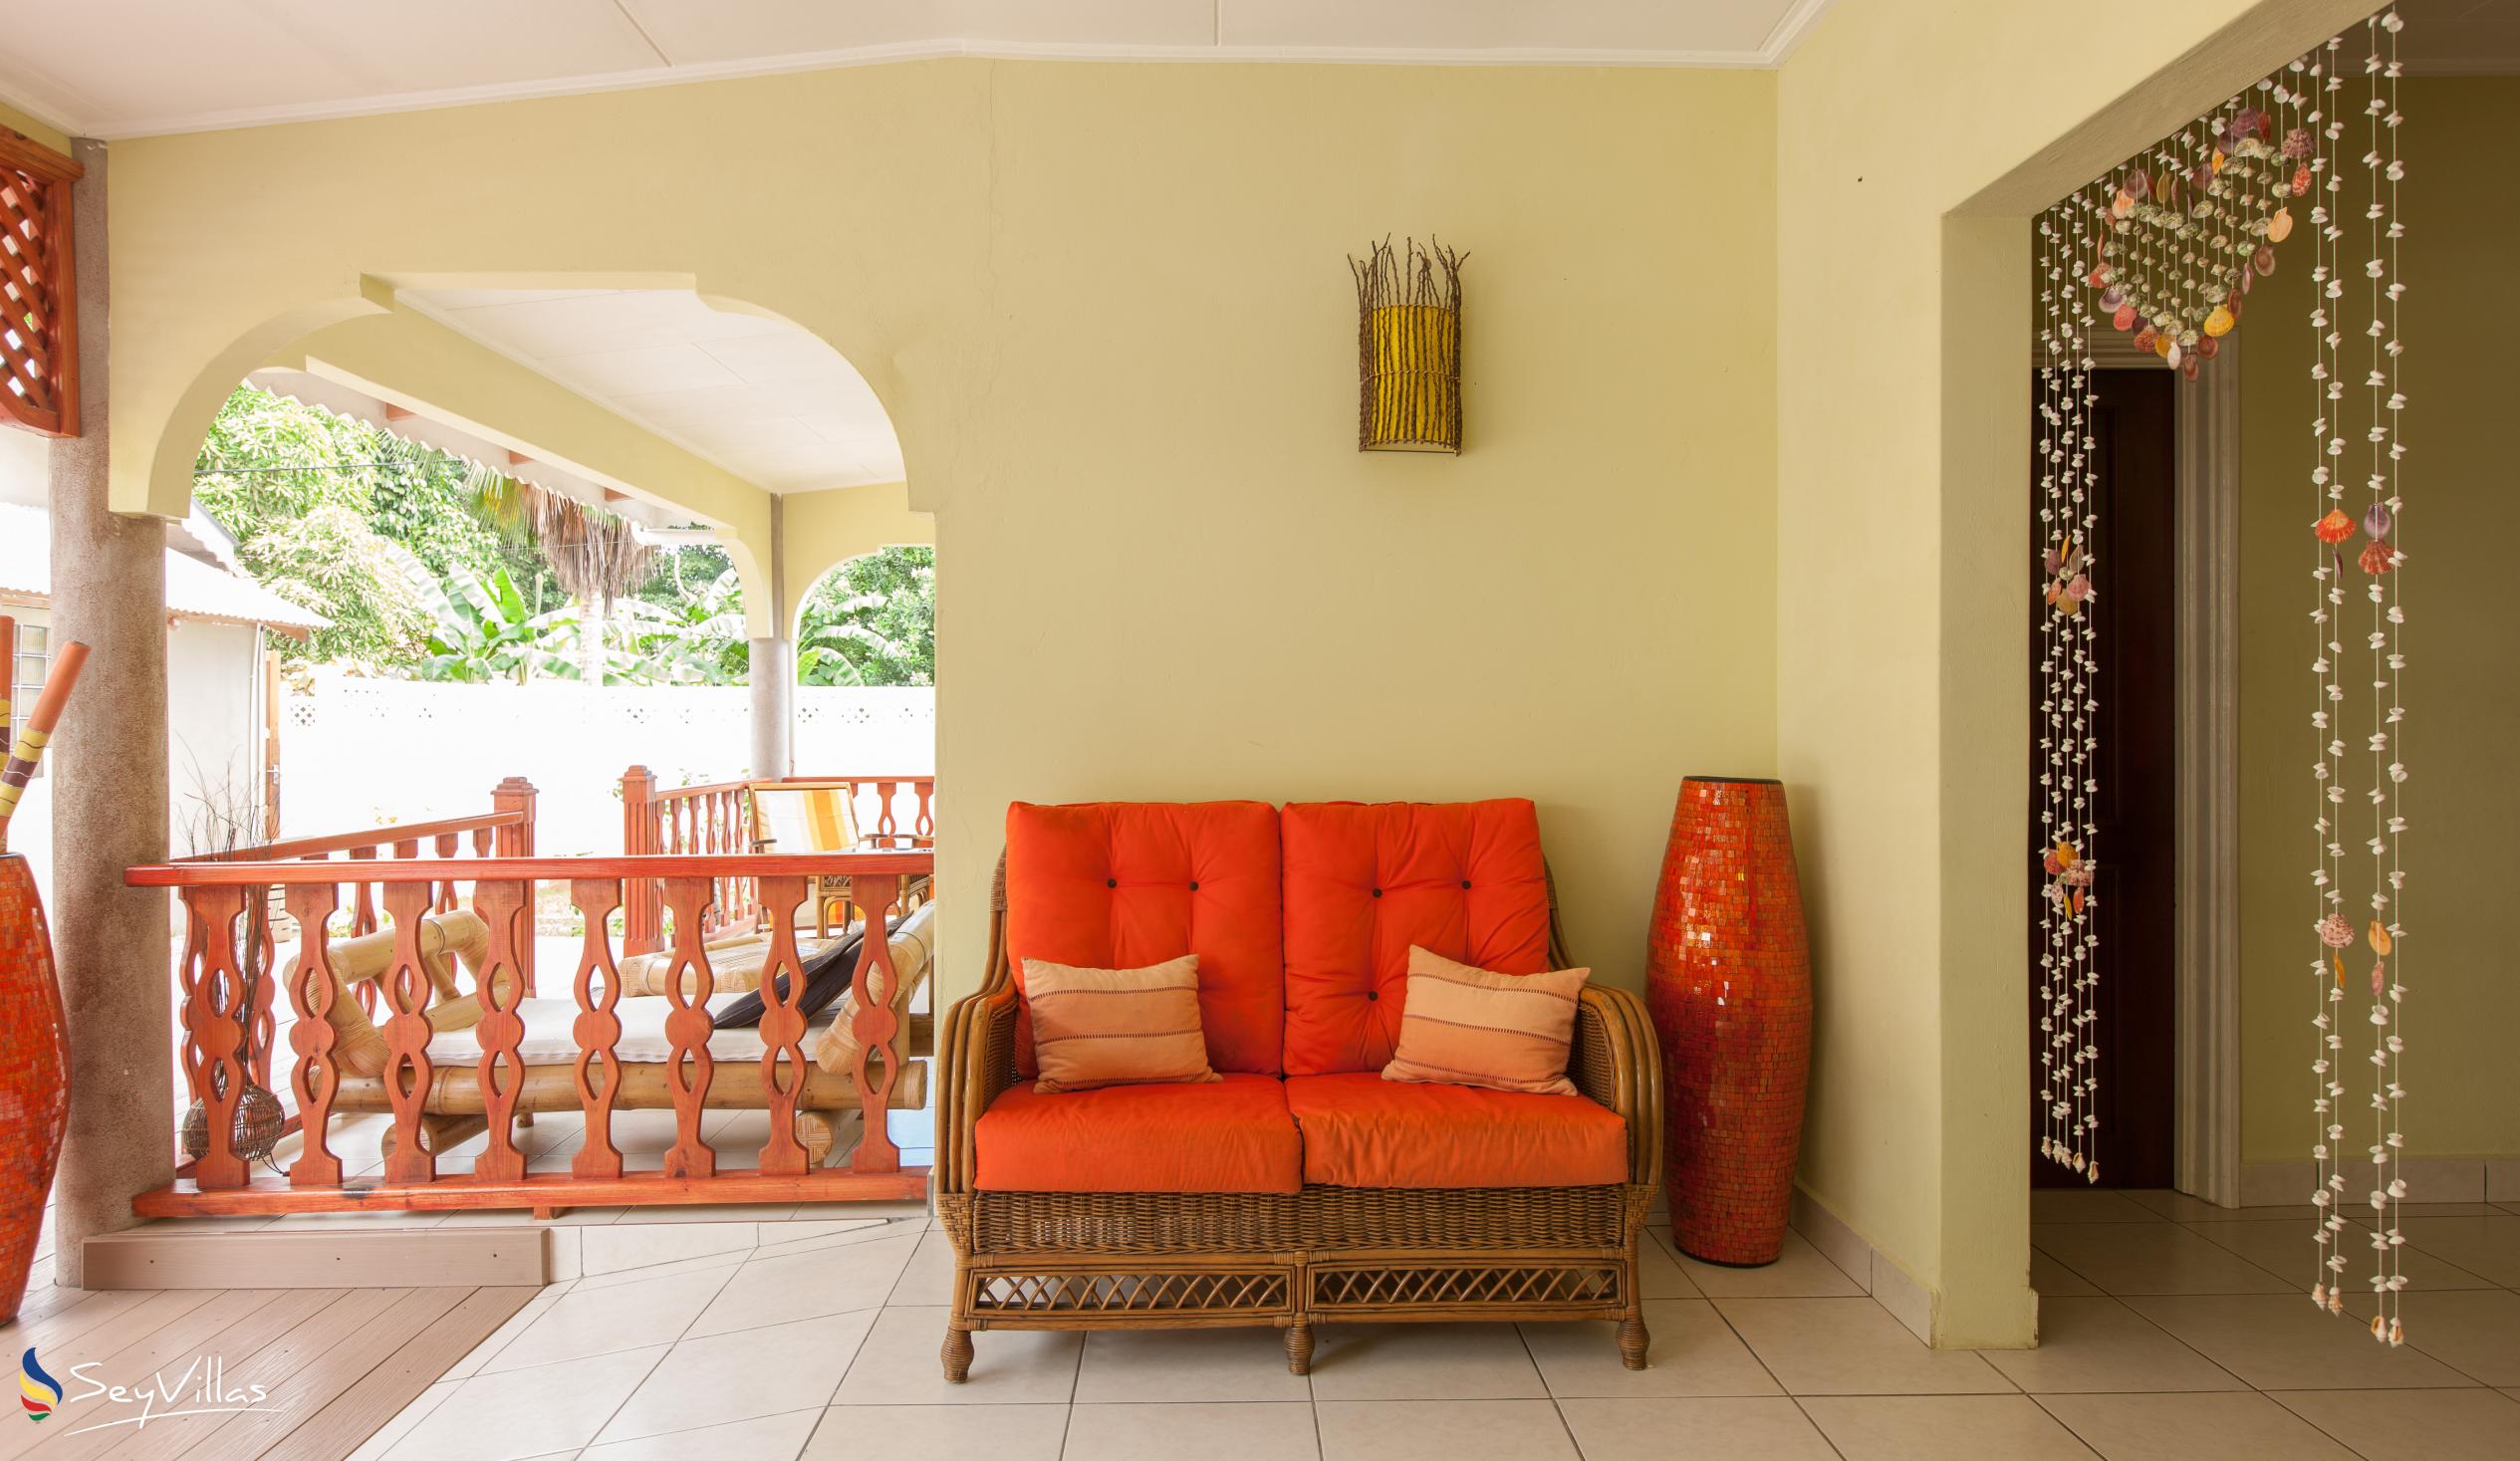 Foto 20: Villa Authentique - Chambre King - La Digue (Seychelles)